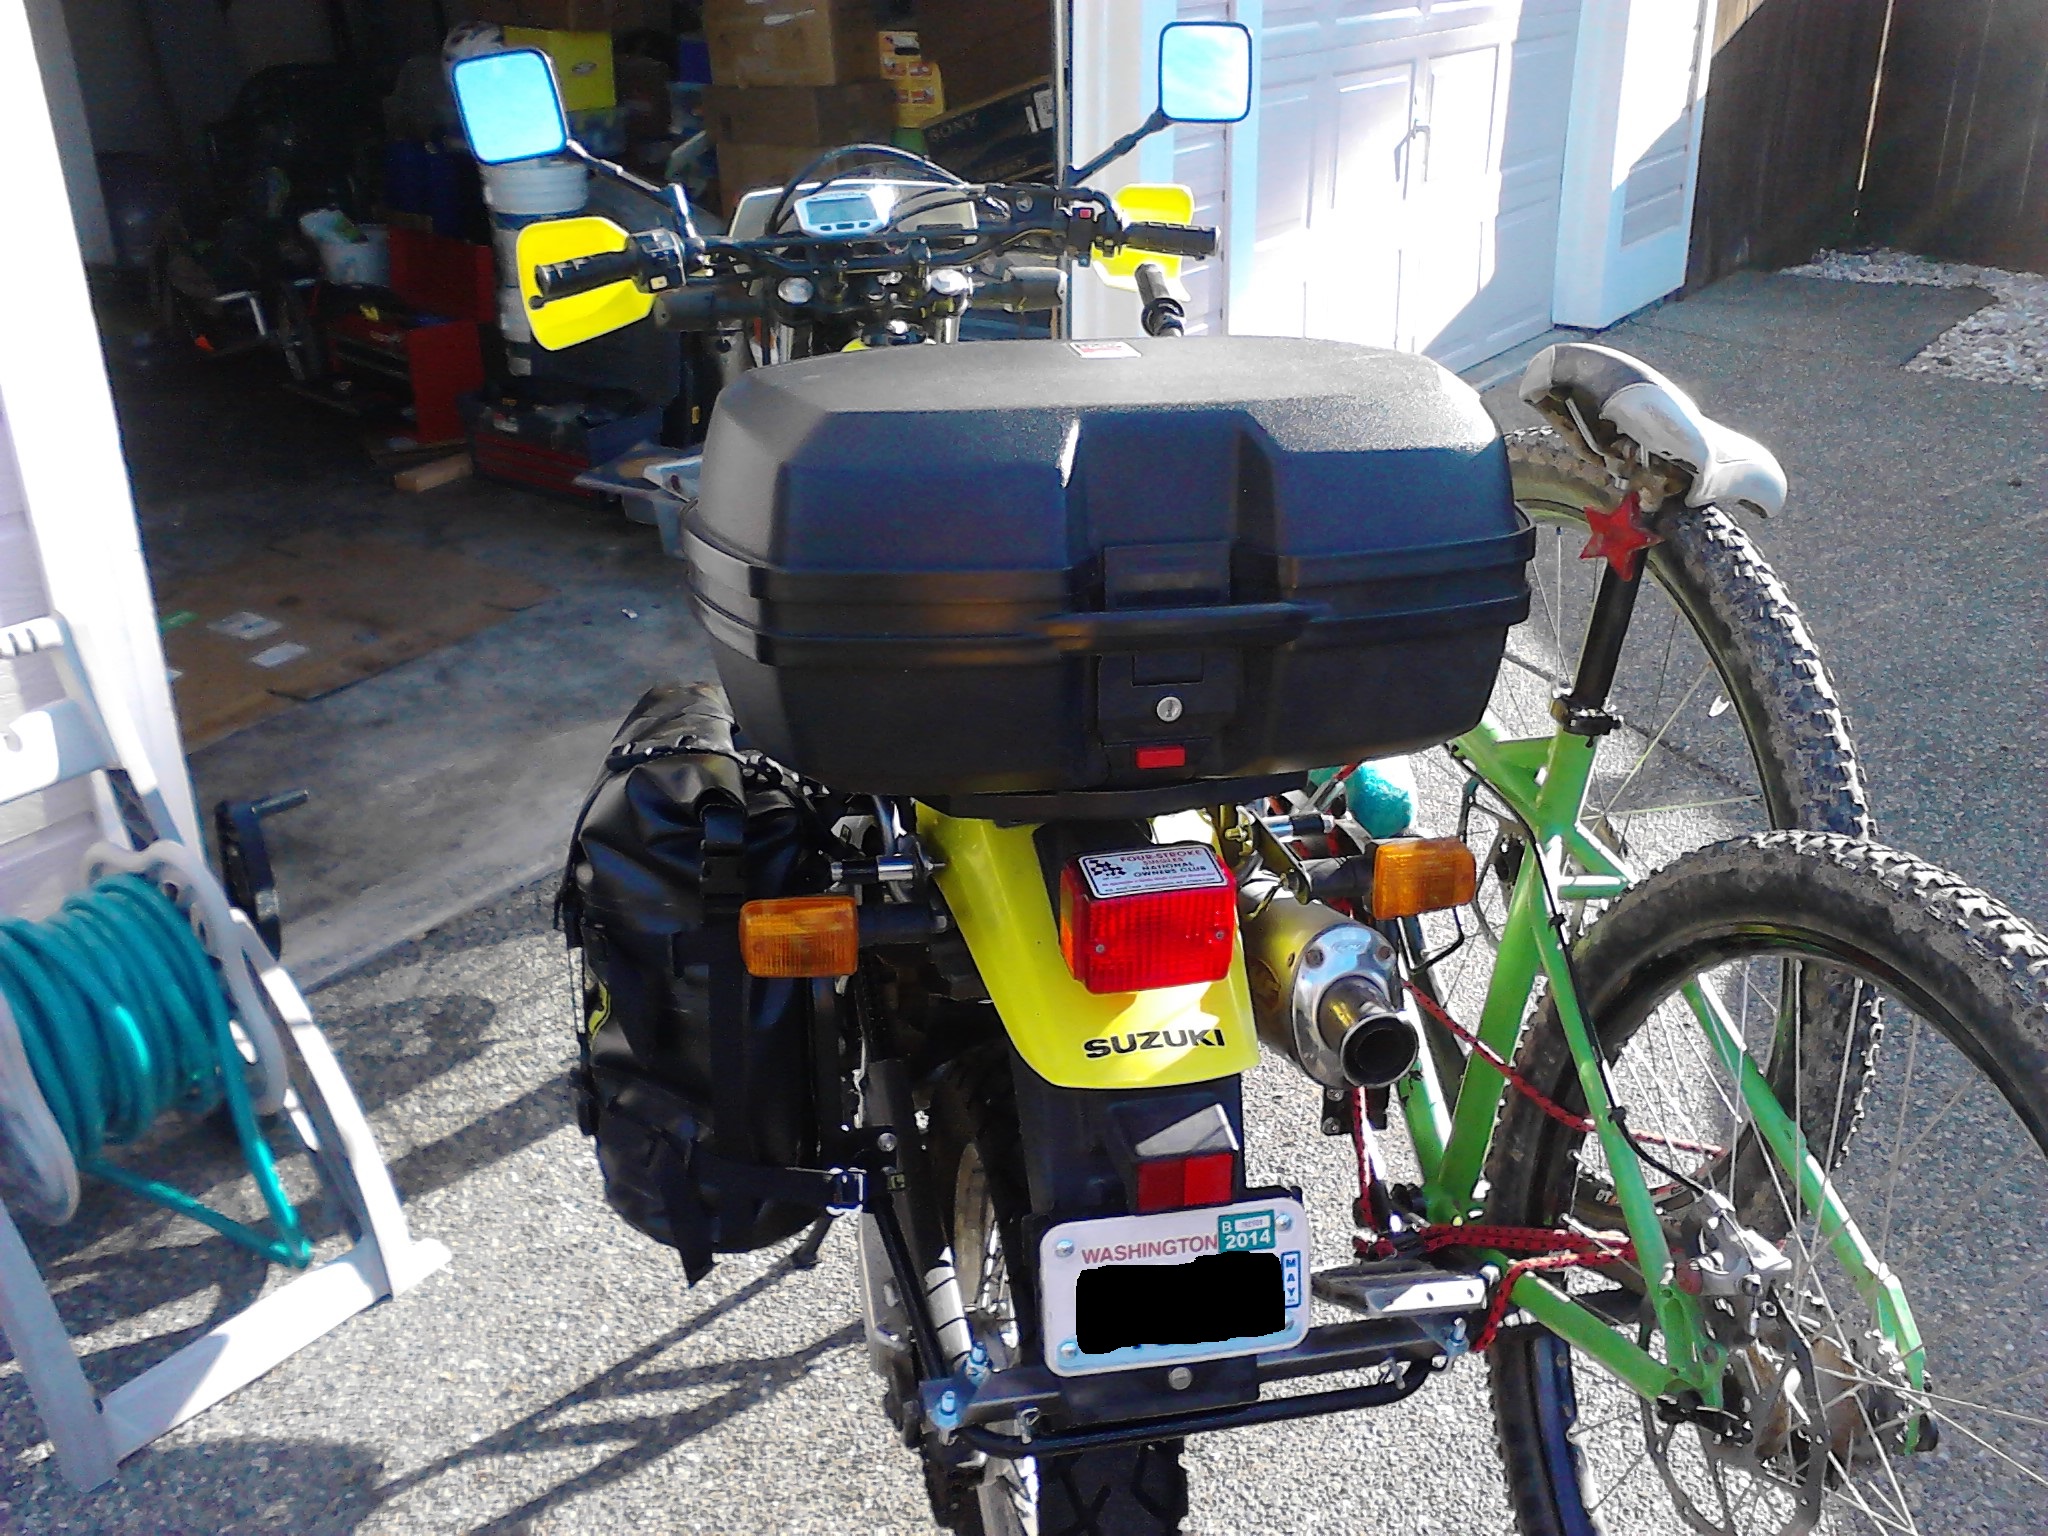 Bike and luggage mounted